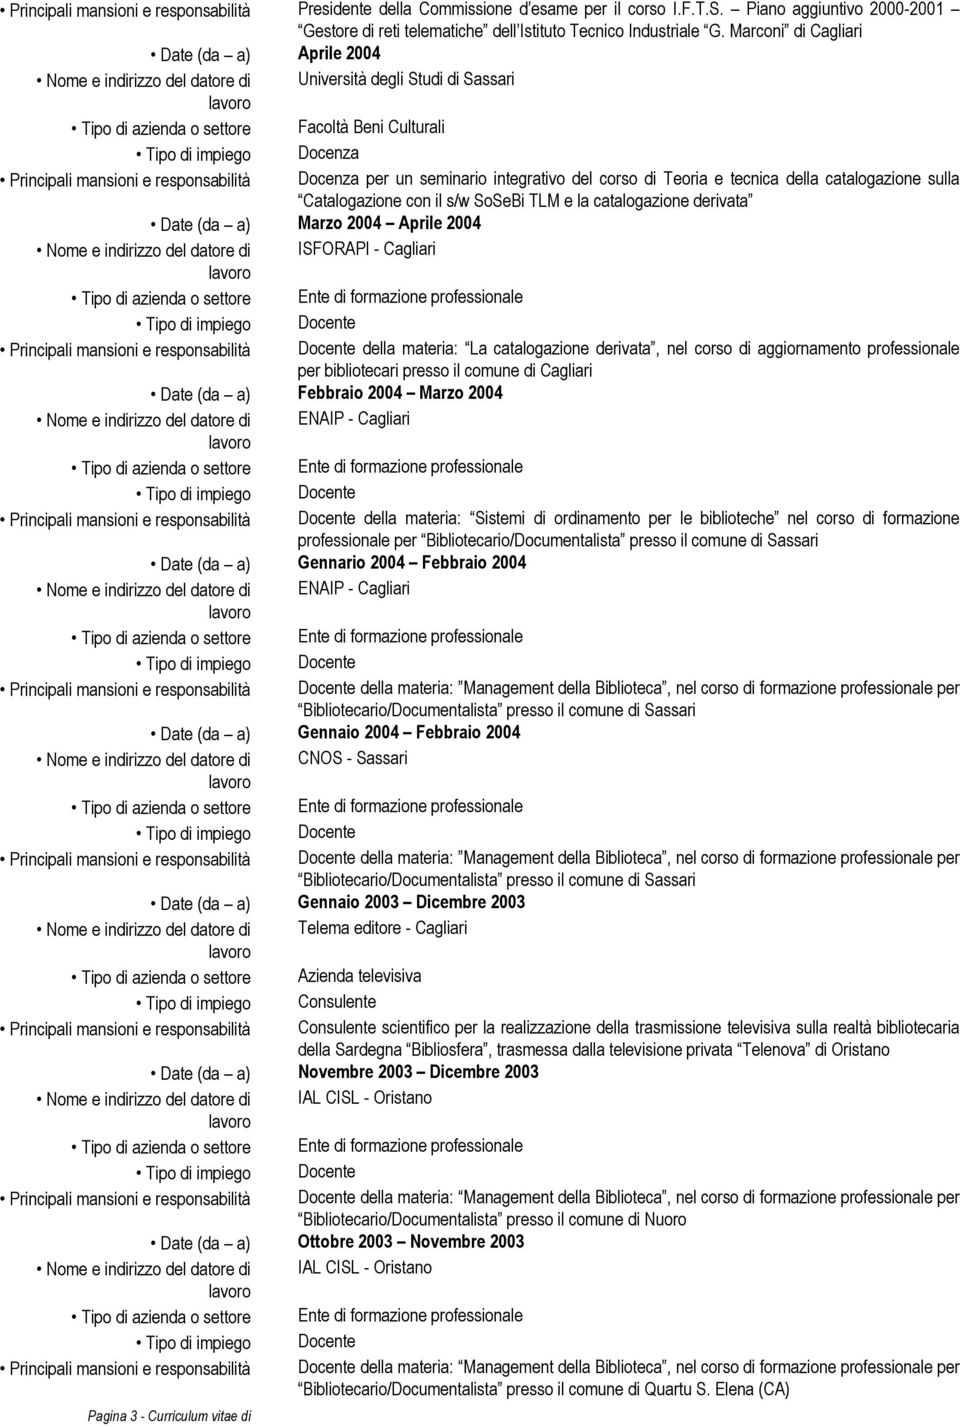 Docenza per un seminario integrativo del corso di Teoria e tecnica della catalogazione sulla Catalogazione con il s/w SoSeBi TLM e la catalogazione derivata Date (da a) Marzo 2004 Aprile 2004 Nome e